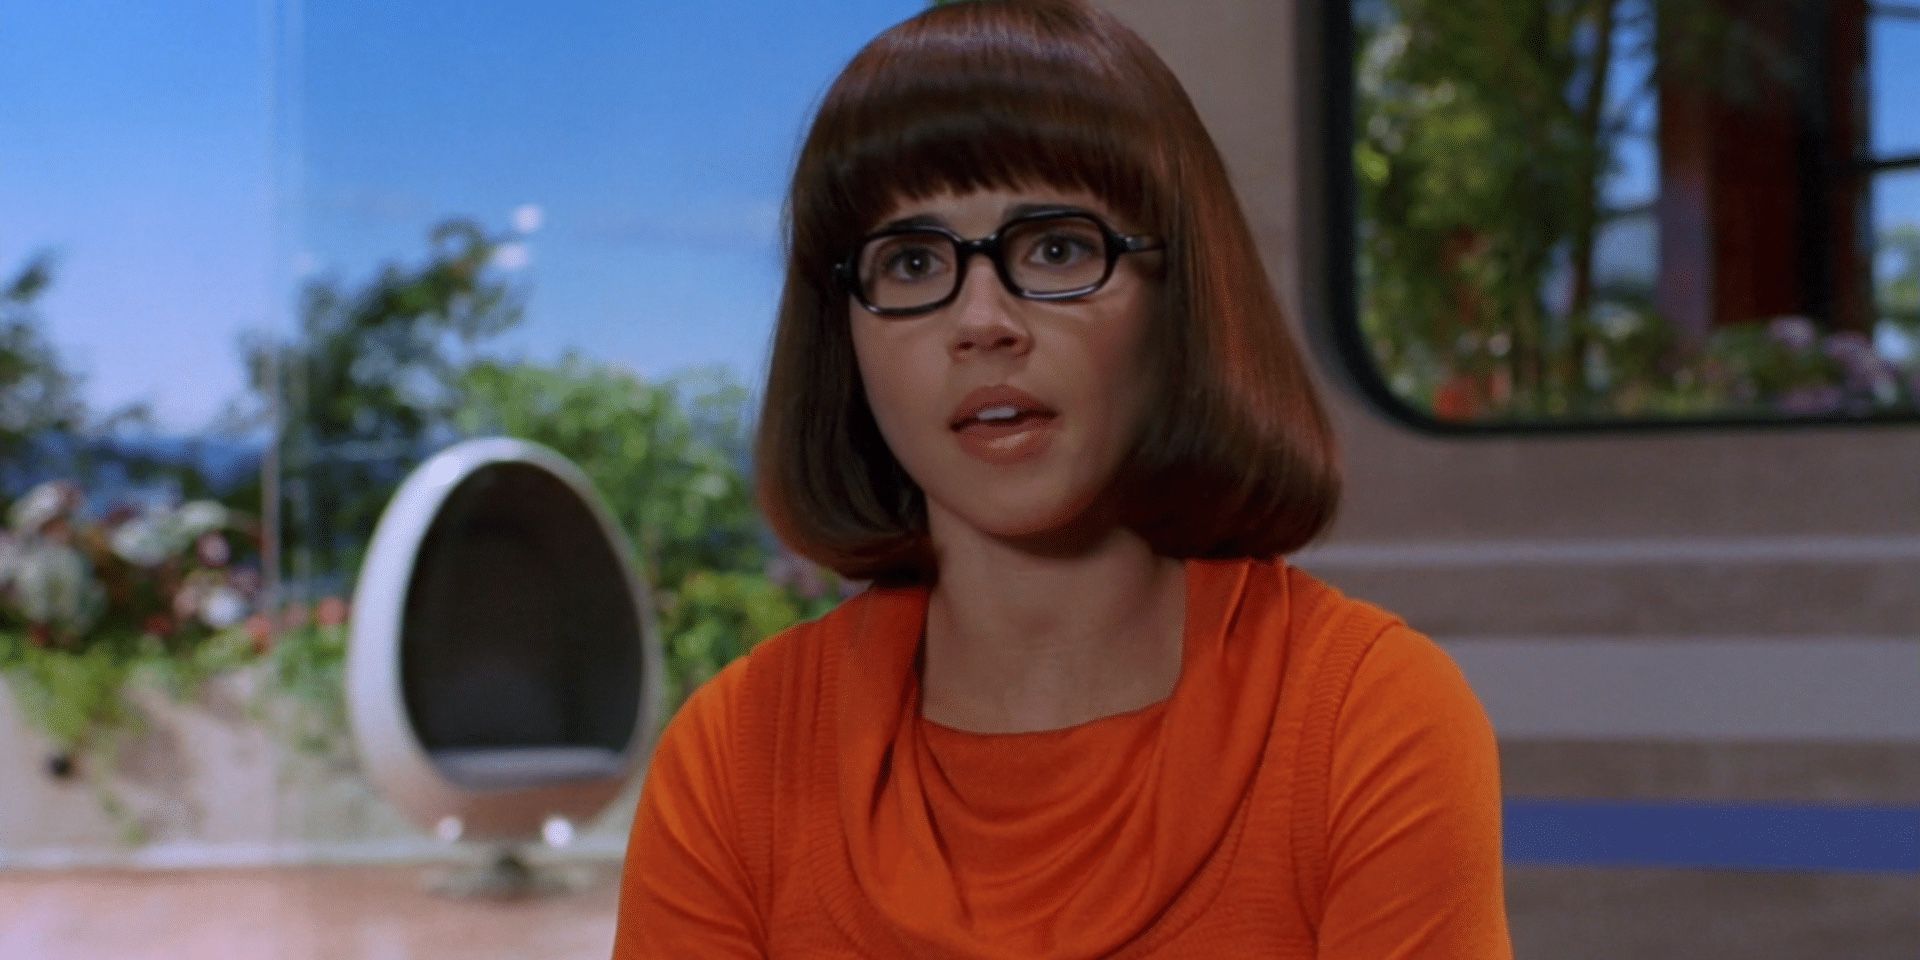 Scooby Doo s Velma